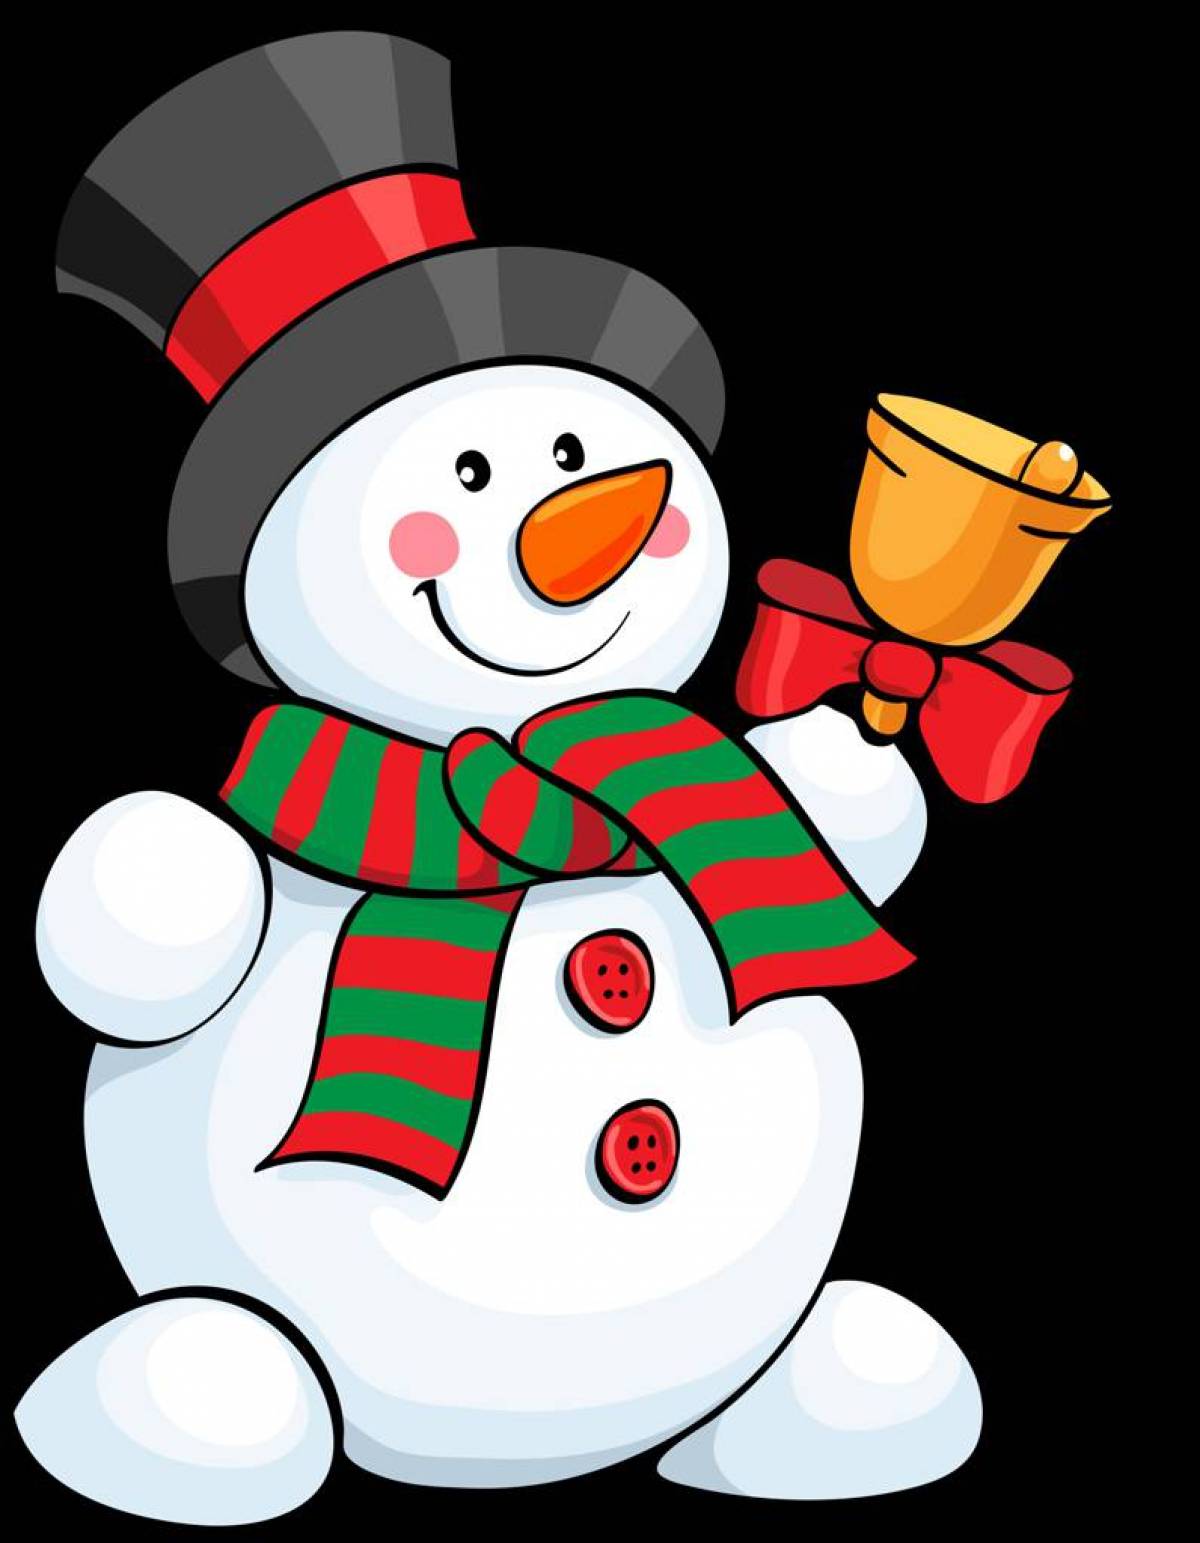 Раскраска снеговик: векторные изображения и иллюстрации, которые можно скачать бесплатно | Freepik